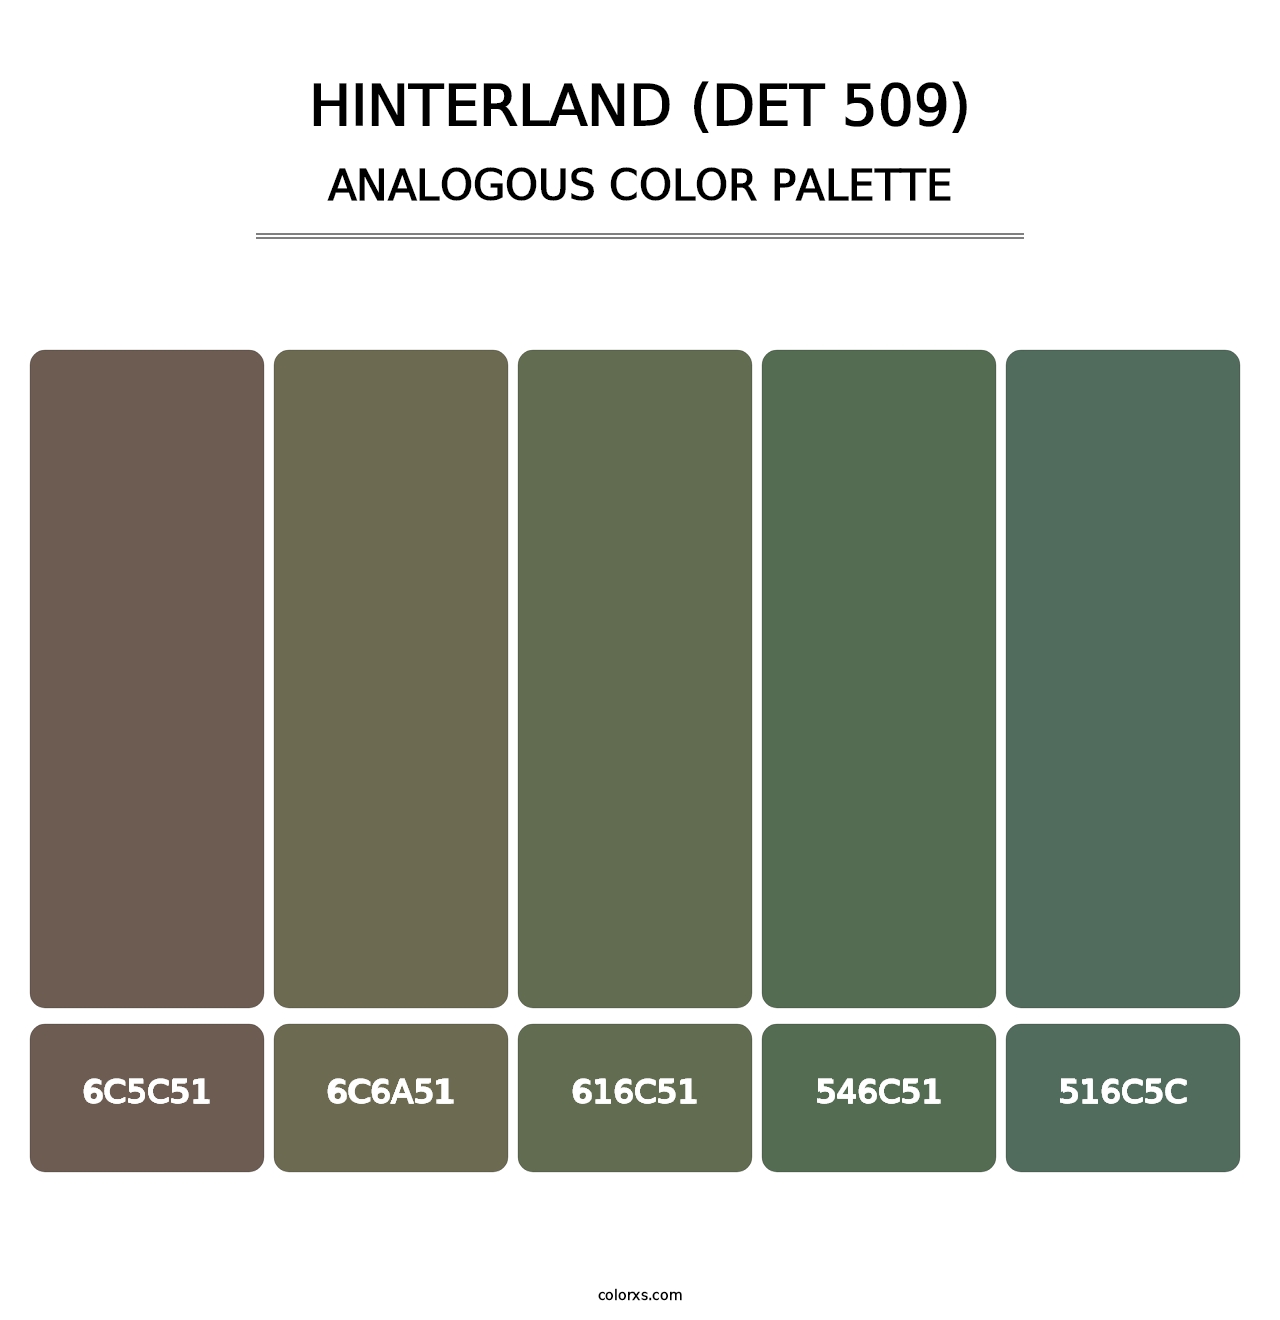 Hinterland (DET 509) - Analogous Color Palette